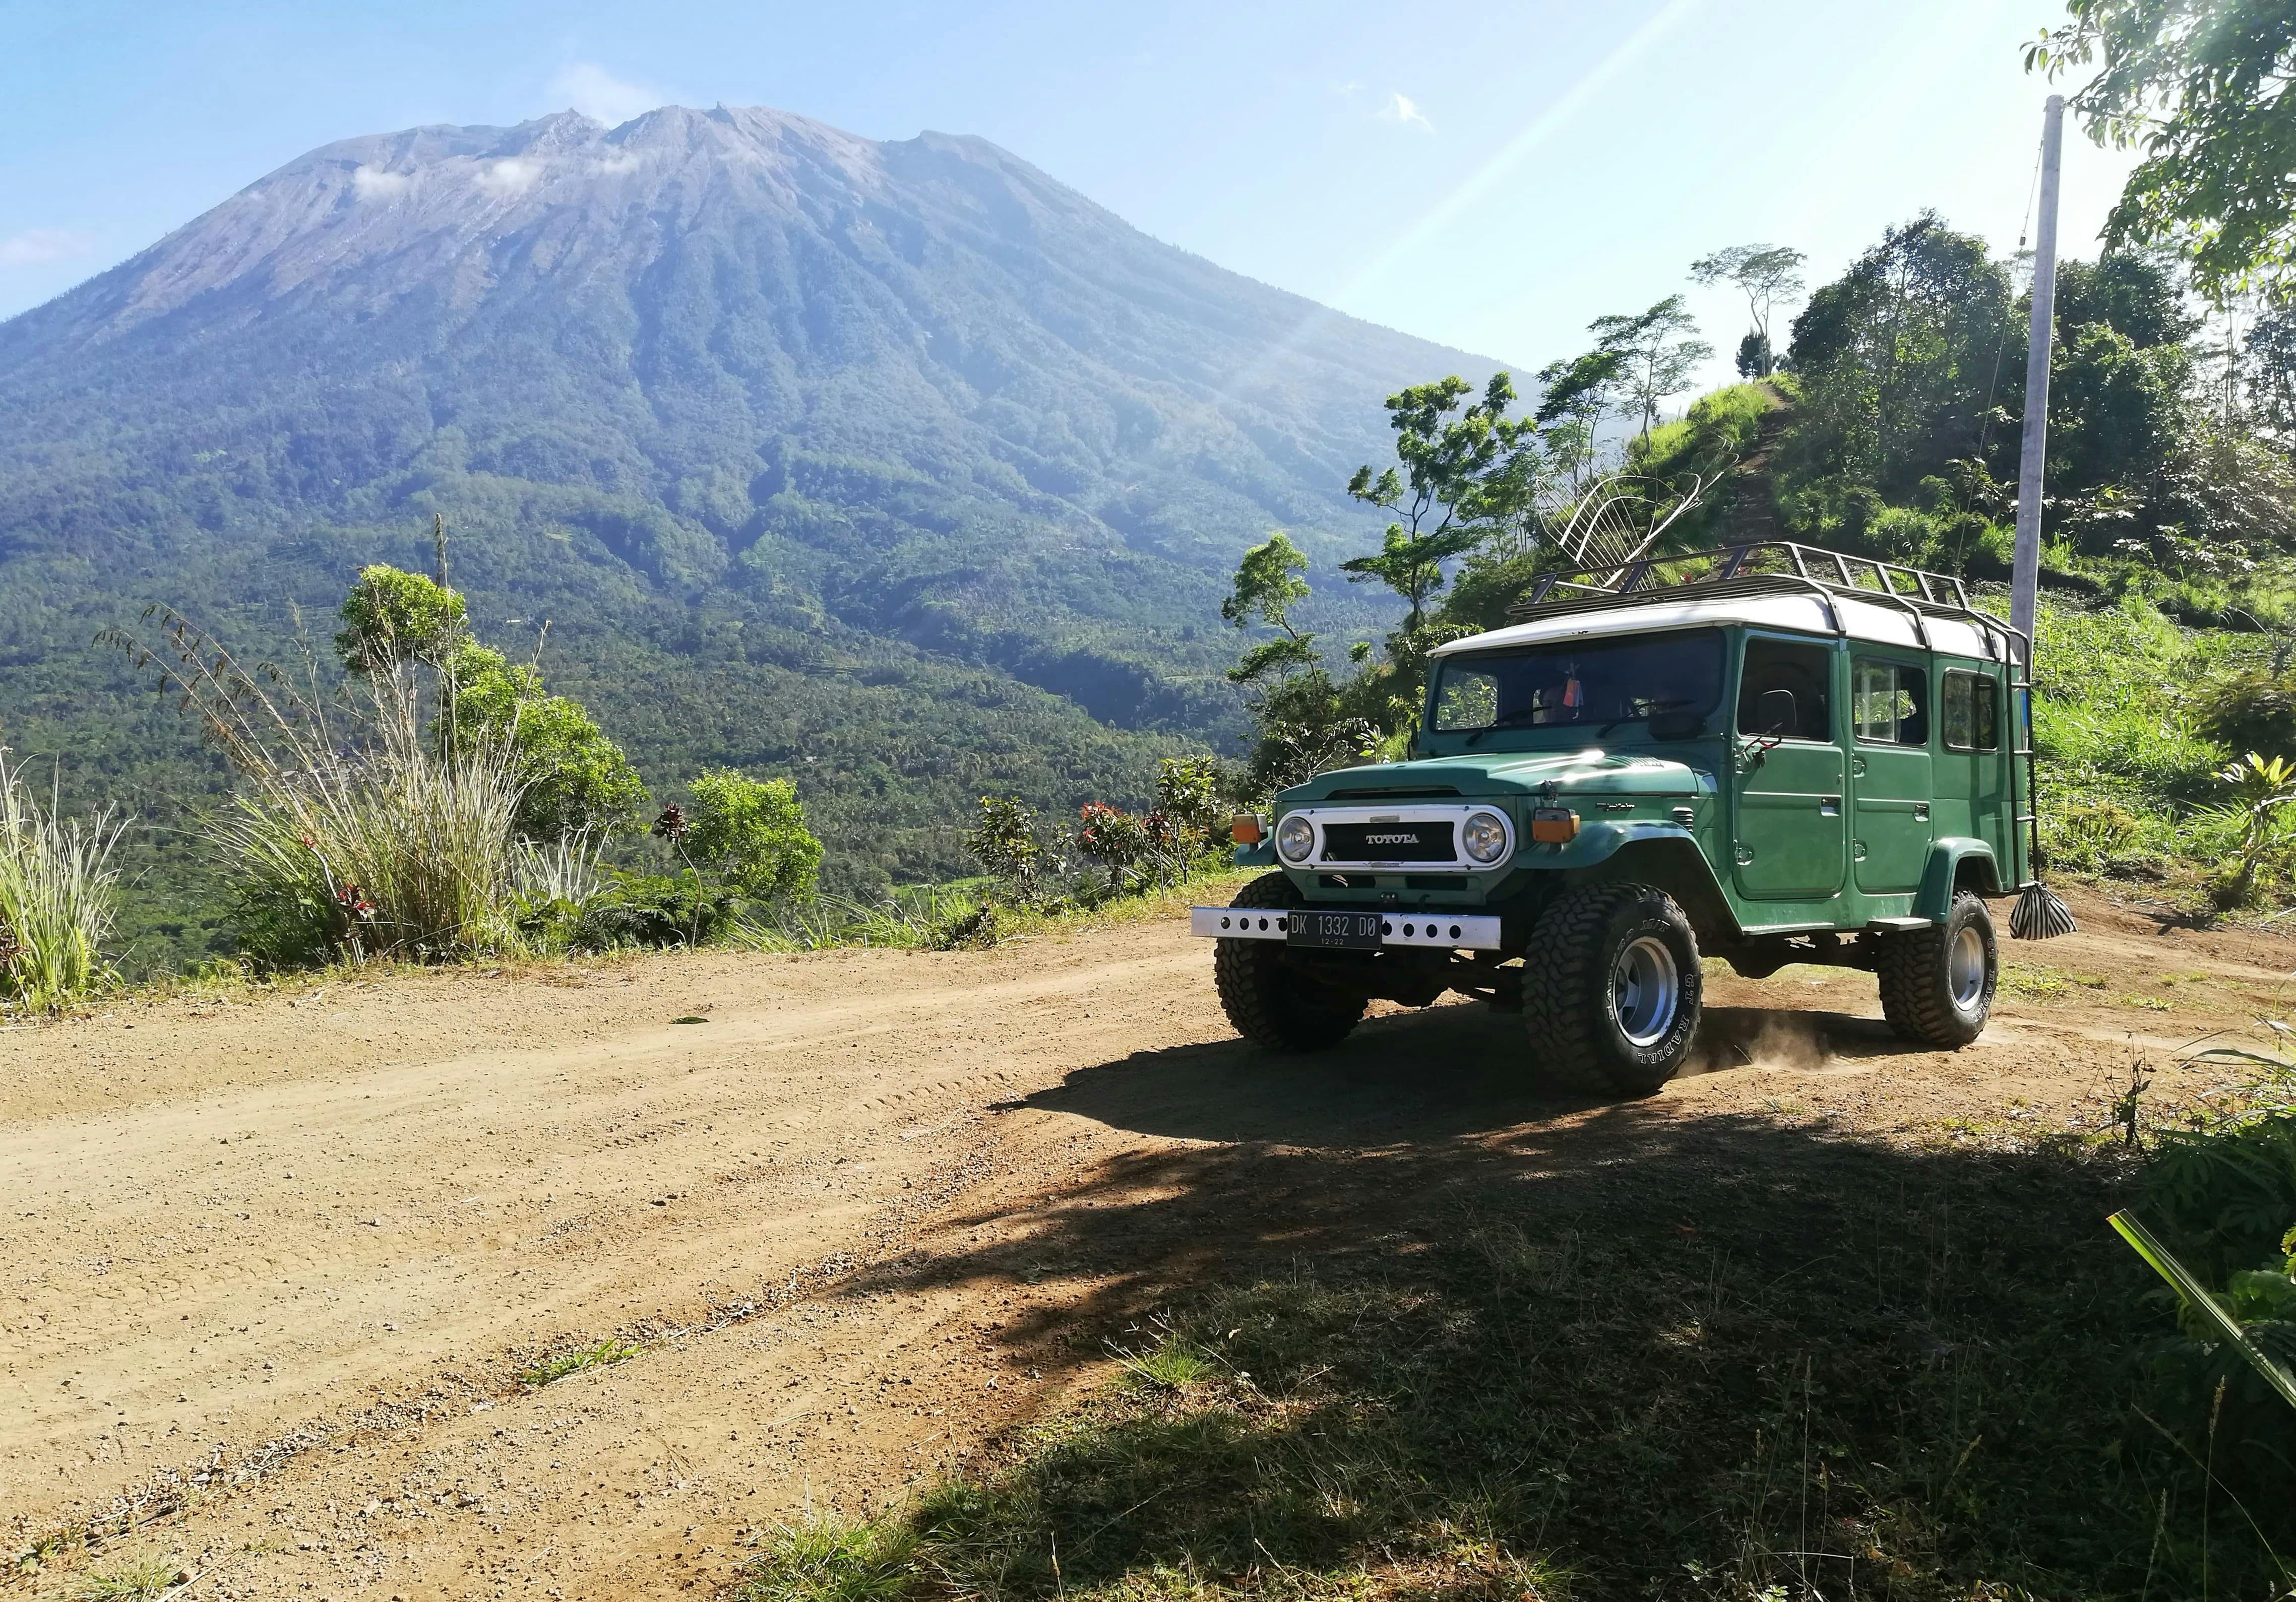 Eastern Bali 4x4 Safari with Salak Farming Experience